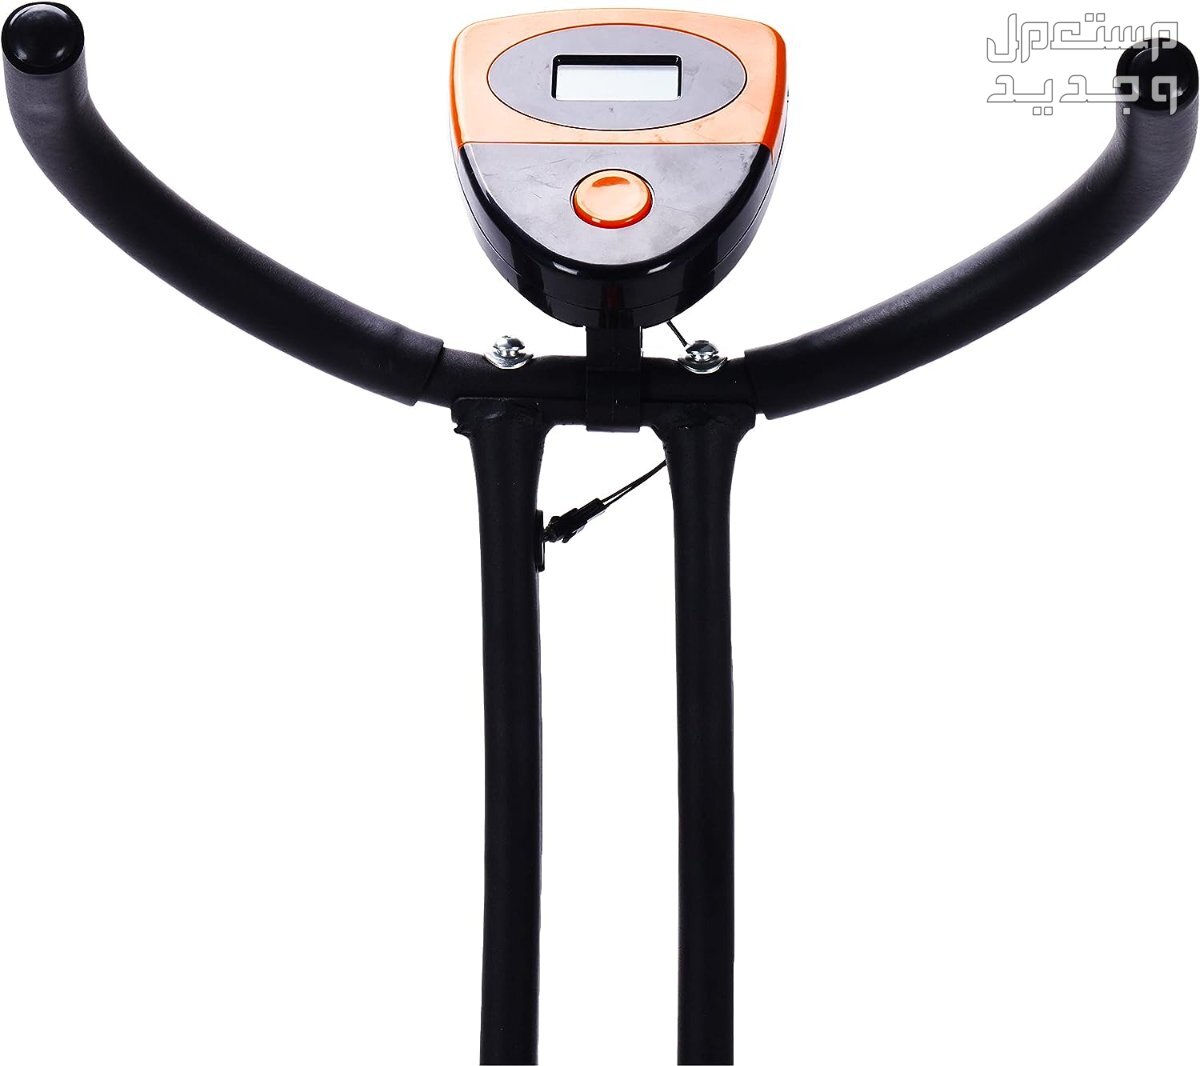 ارخص اجهزة رياضية مستعملة بالمواصفات والصور والاسعار في اليَمَن جهاز ‎دراجة كارديو ‎بودي بيلدر موديل ‎38-1112-Orange